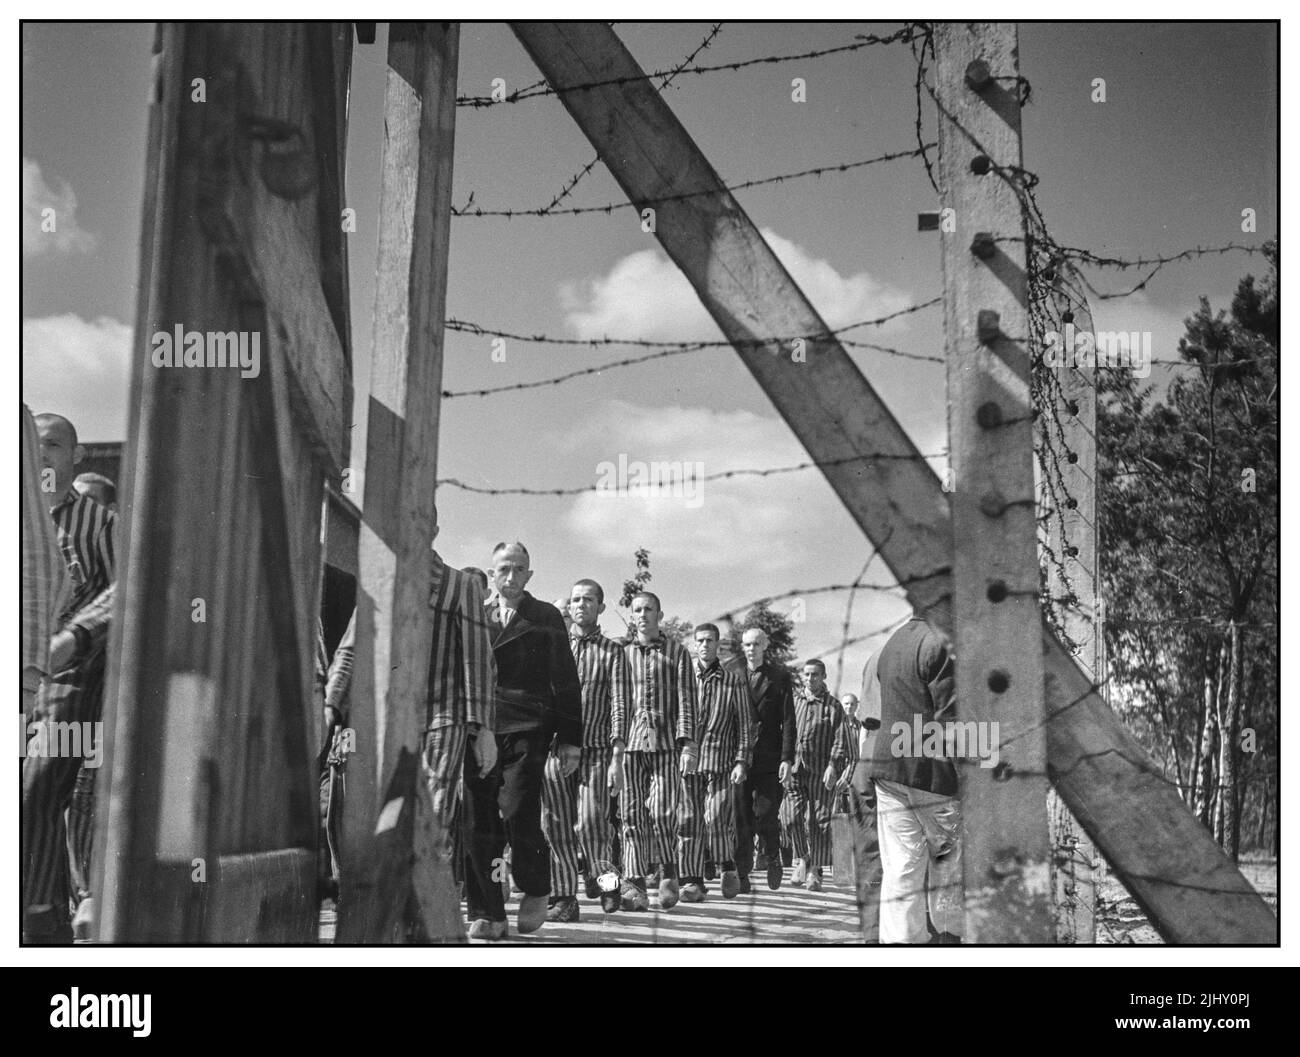 1945 Colaboradores nazis holandeses Los prisioneros de guerra y simpatizantes nazis encarcelaron a causa de un juicio. Pasan los días aquí bajo un régimen estricto. Los soldados de los holandeses Stoottroepen están a cargo de la vigilancia, en particular los 300 colaboradores nazis holandeses Waffen SS. Junio de 1945 Brabante del Norte, Vught Holland Fotógrafo Sem Presser/ Anefo Foto de stock